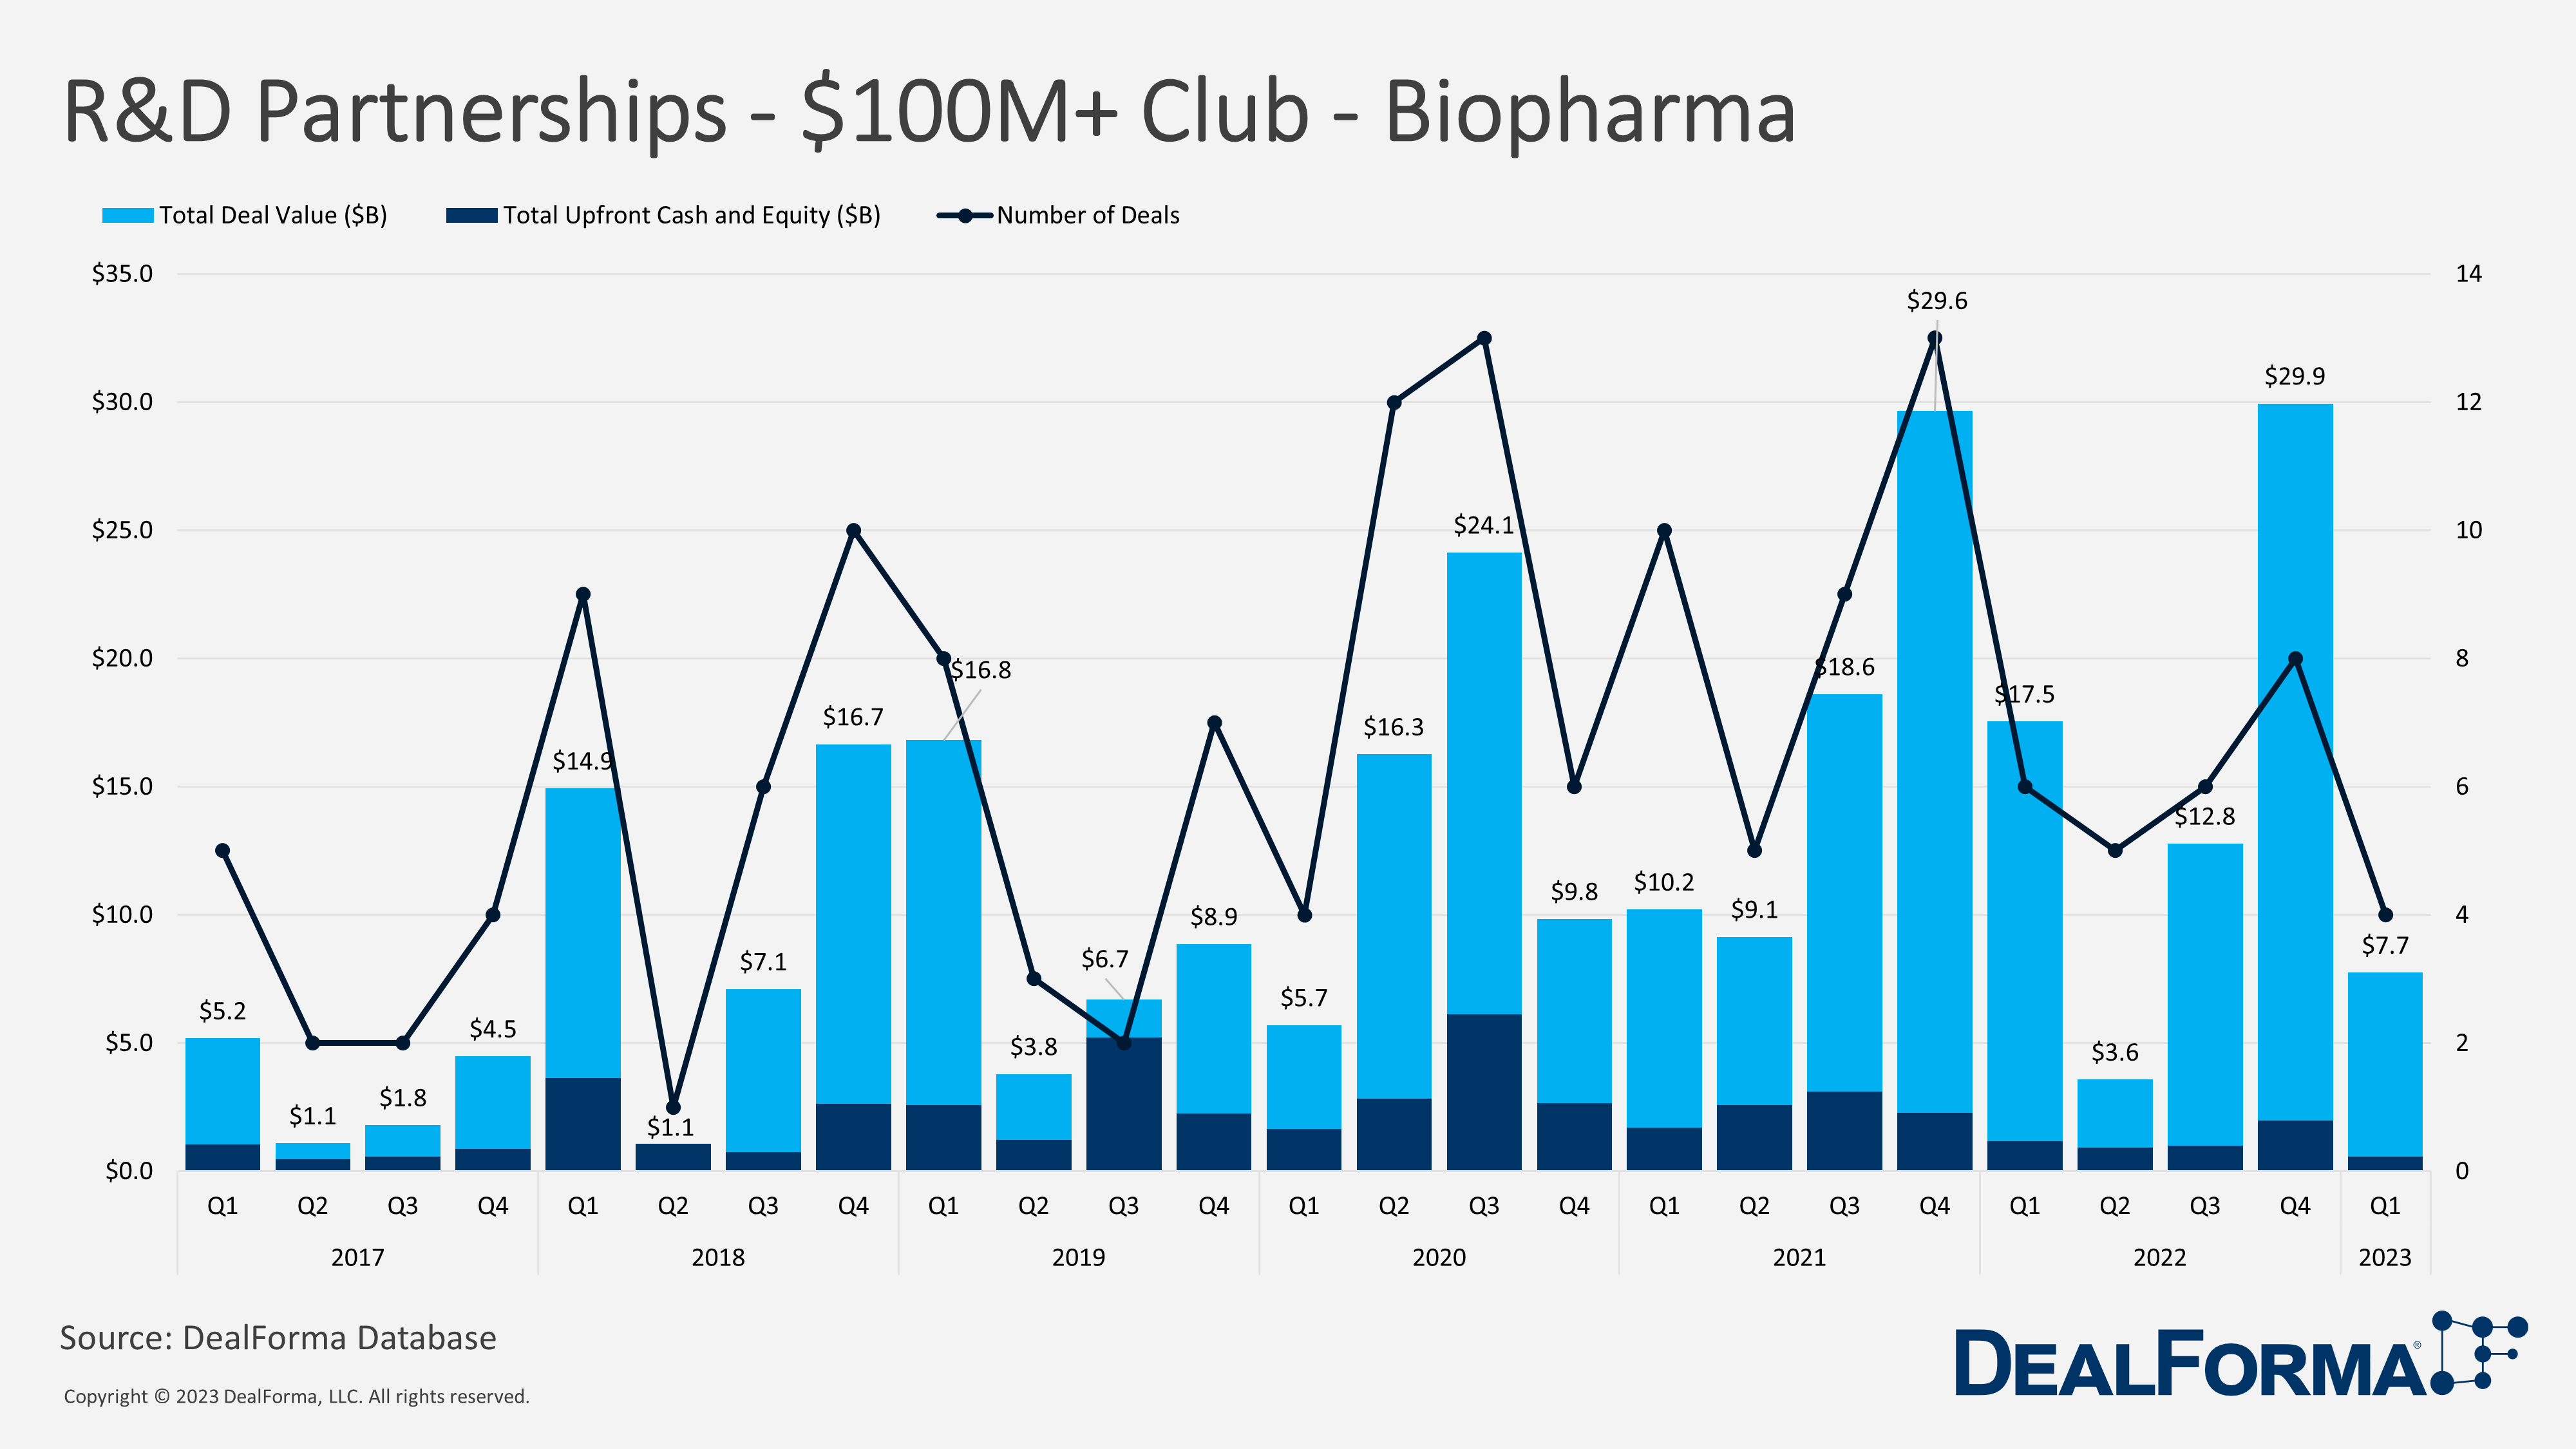 R&D Partnerships - $100M+ Club - Biopharma